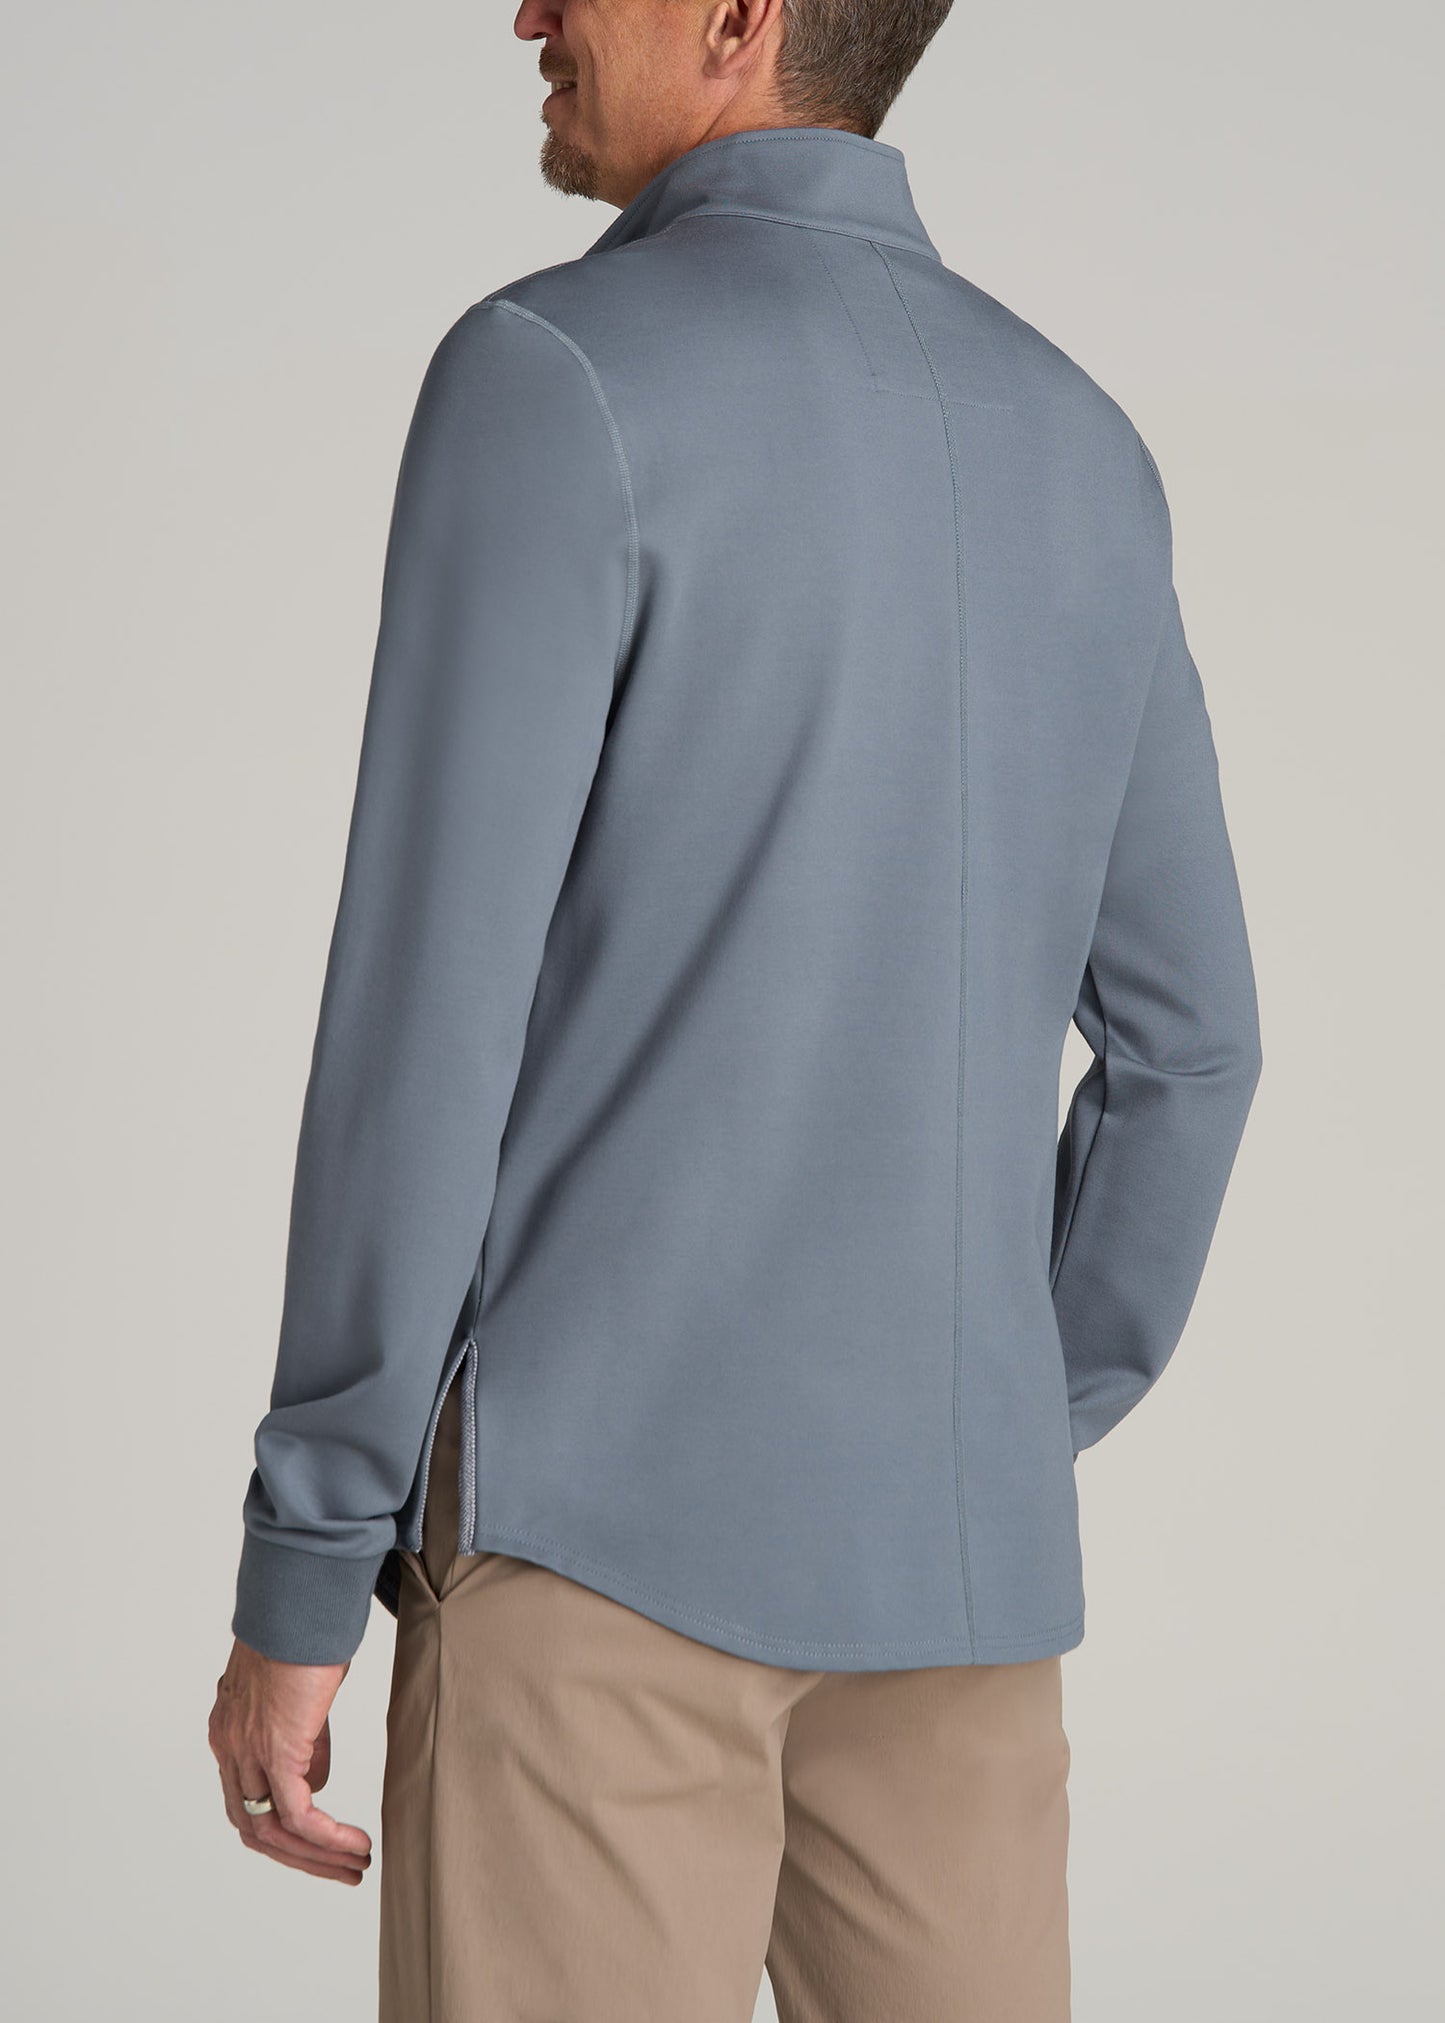 Fairway Popover Tall Men's Sweatshirt in Smoky Blue